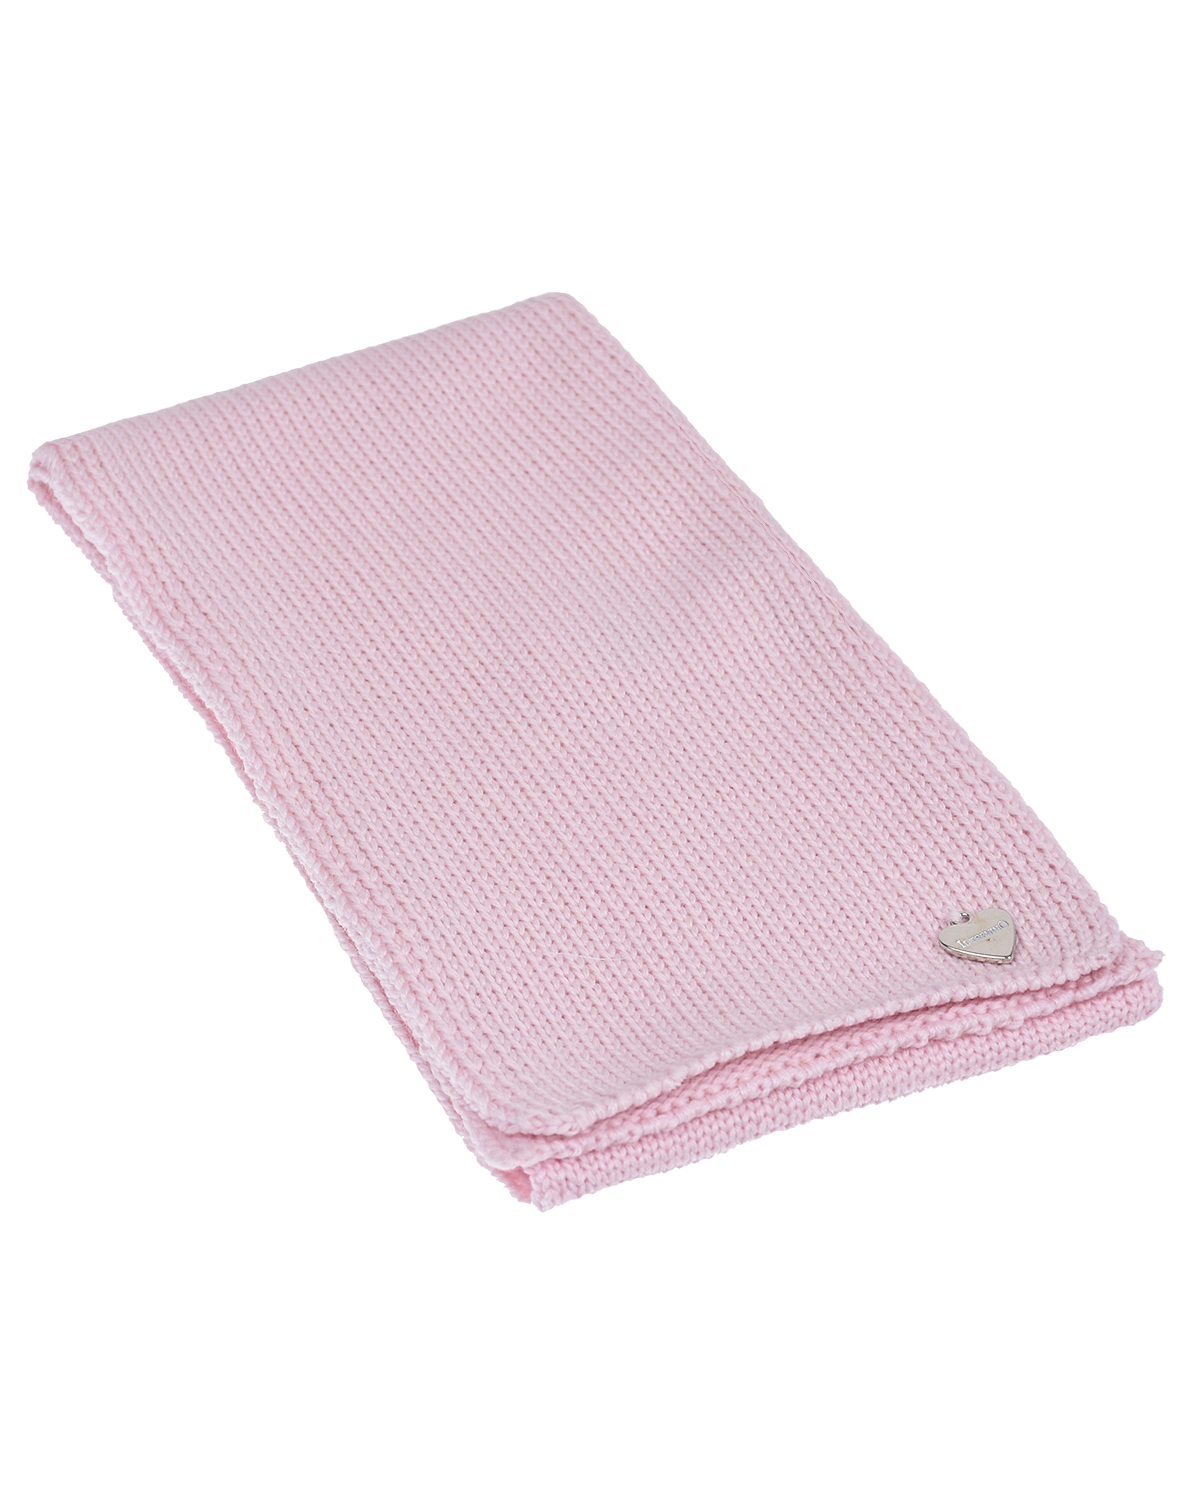 Розовый шарф из шерсти Il Trenino детский, размер unica